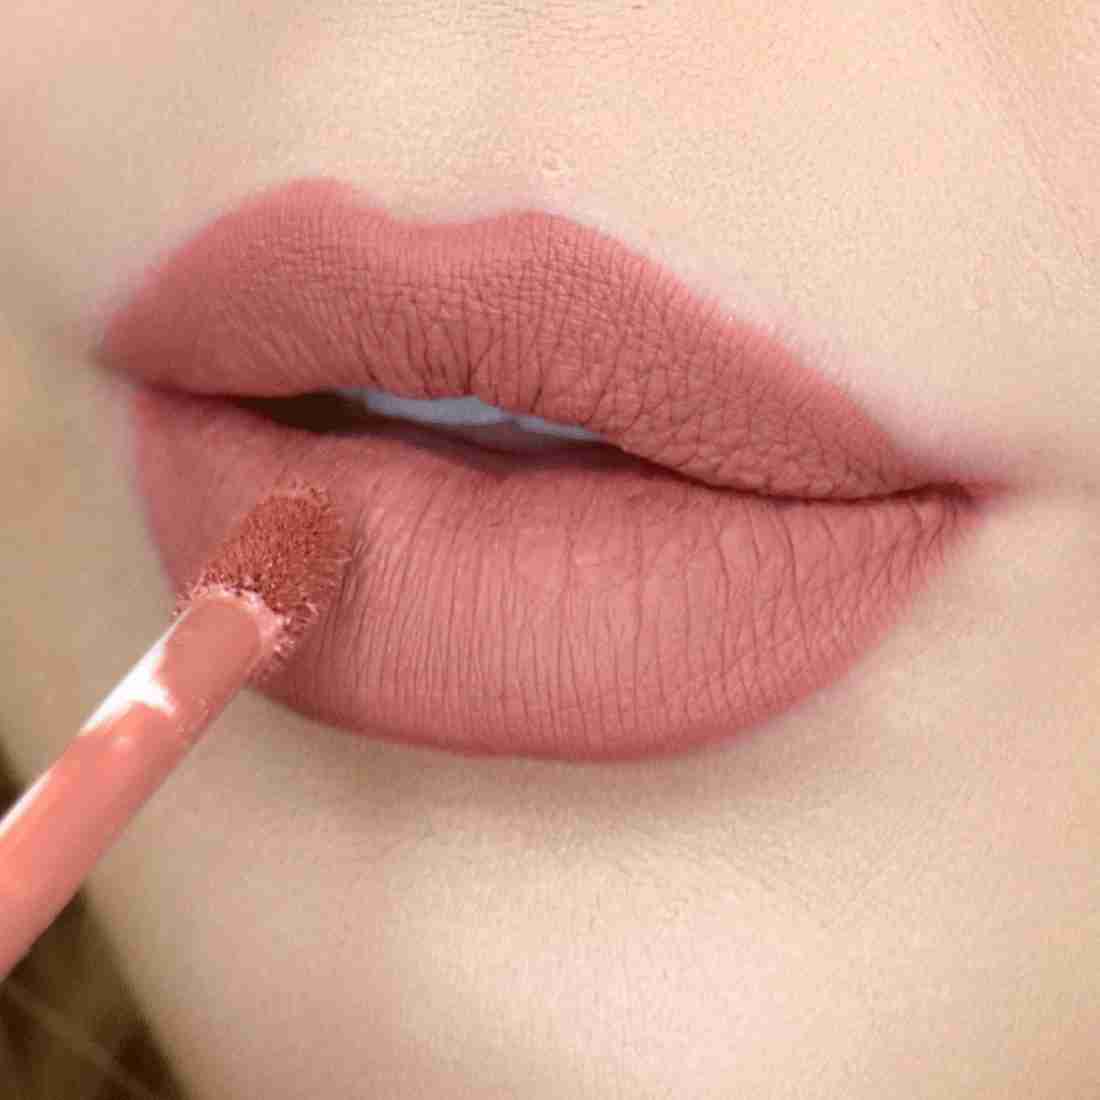 Lipstick Tips : अगर आप भी लिपस्टिक खरीद रहे है तो इन टिप्स को जरूर जानें